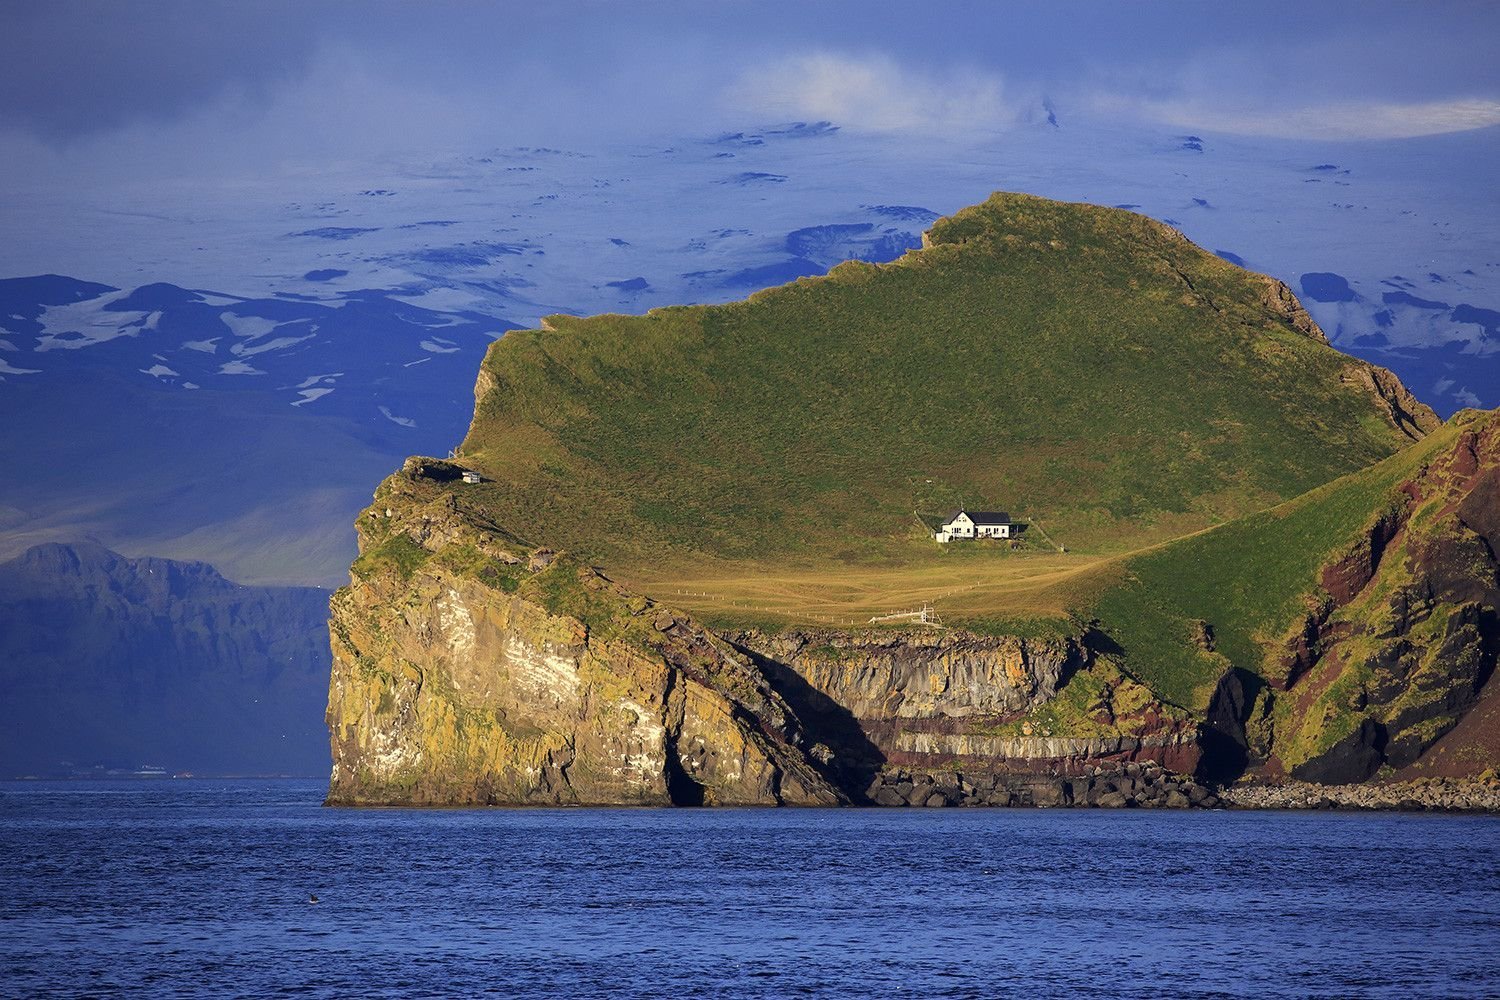 Inhabited island. Остров Эллидаэй Исландия. Остров Эдлидаэй в Исландии. Одинокий дом на острове Эллидаэй Исландия. Остров Вестманнаэйяр Исландия.